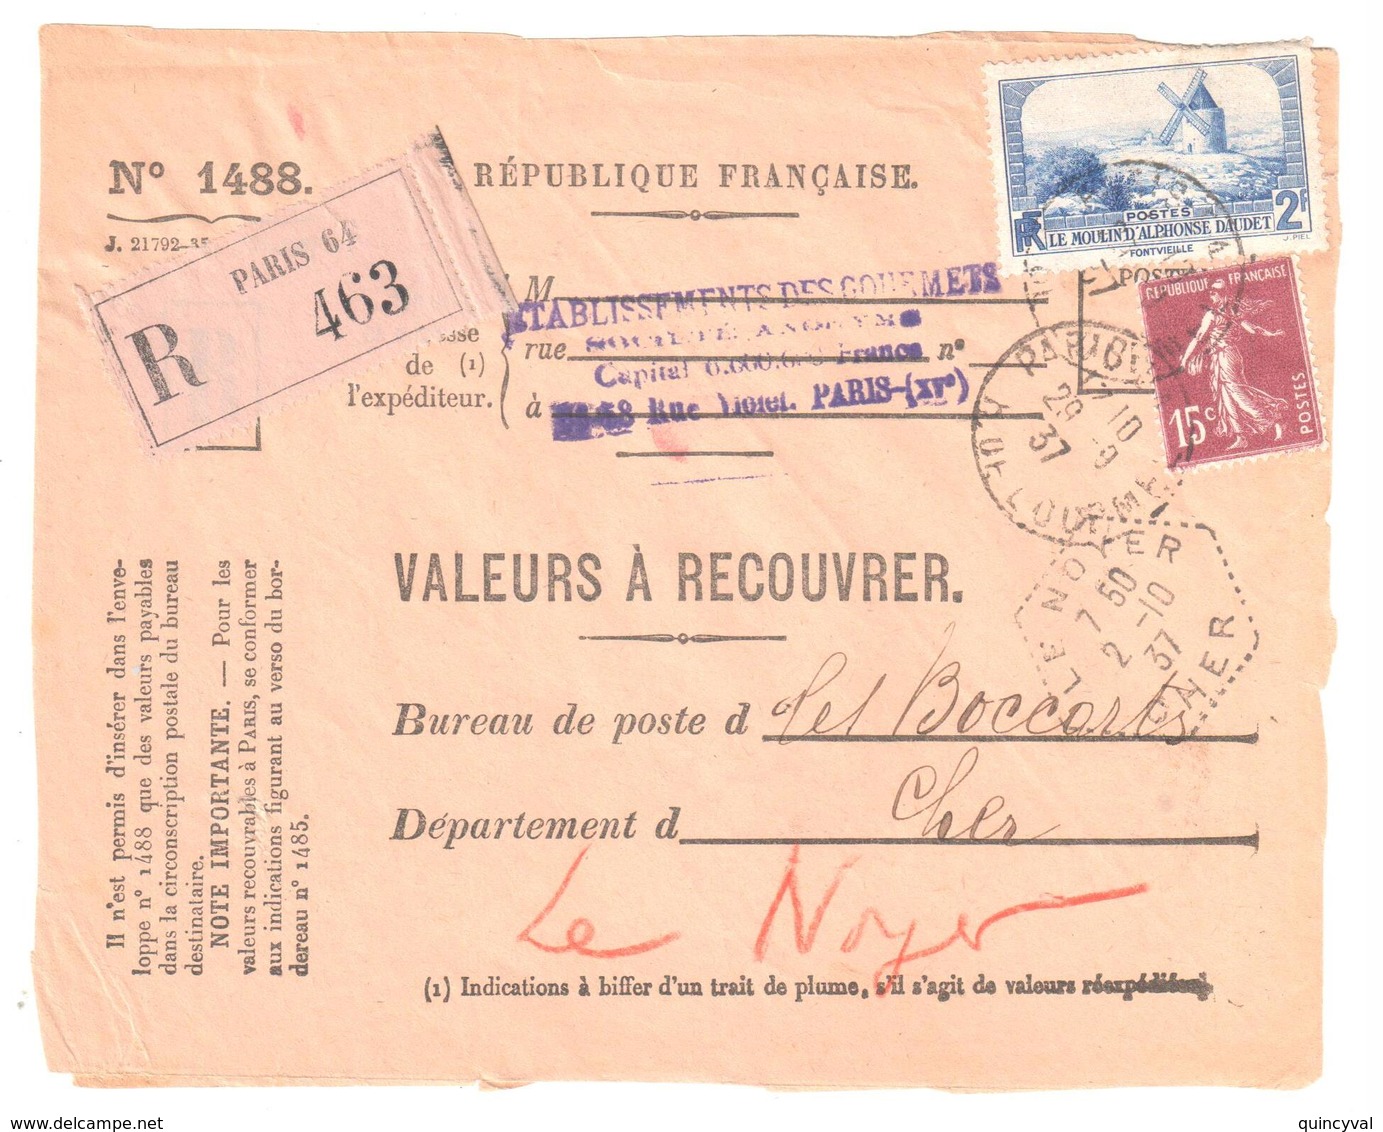 PARIS 64 Valeur à Recouvrer N° 1488 Daudet Semeuse 15 C Yv 311 189 Ob 1937 Dest Le Noyer Cher Hexagone Pointillé F4 - Lettres & Documents